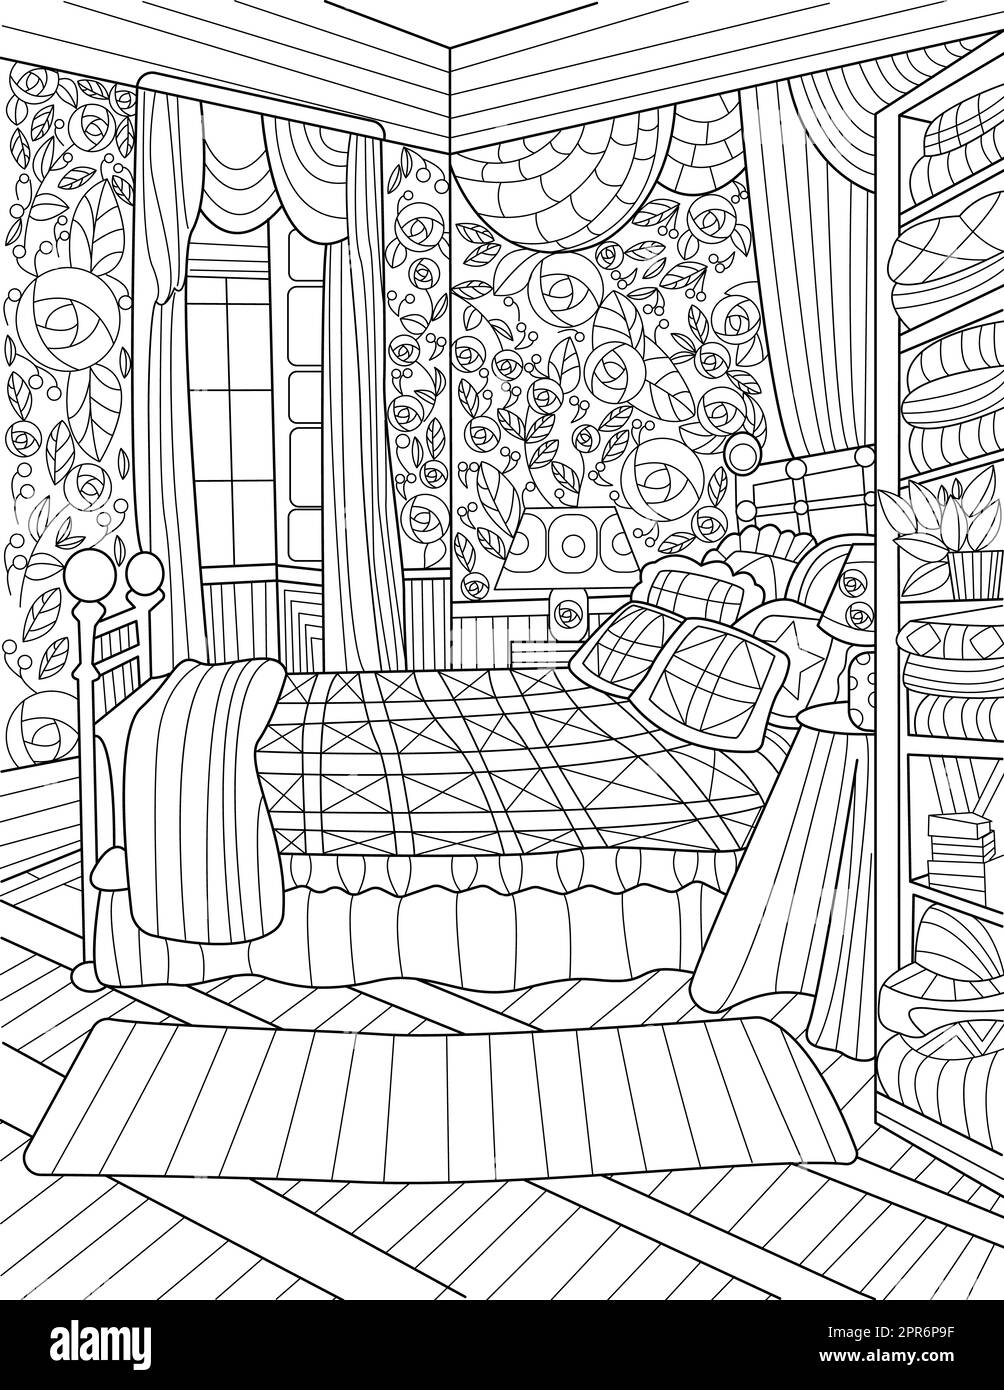 Chambre à coucher ligne incolore dessin grand lit fenêtres ouvertes rideaux de table. Banque D'Images